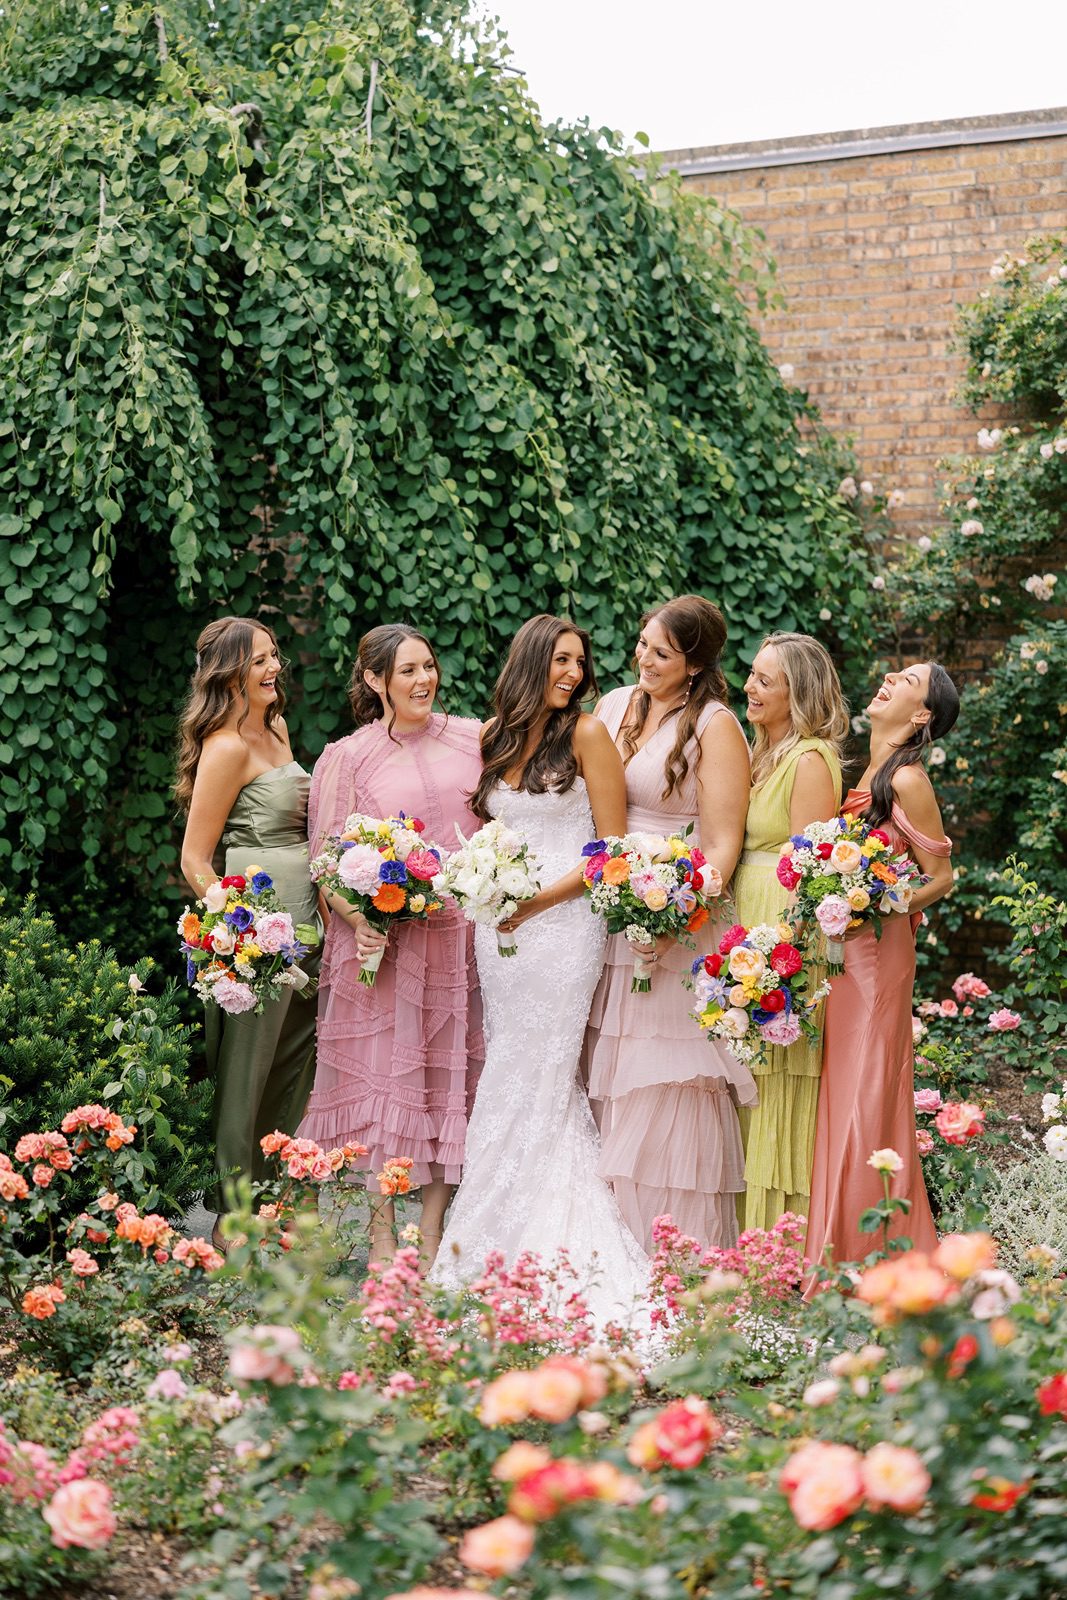 Bridesmaids pose for photos at the Chicago Botanic Garden wedding